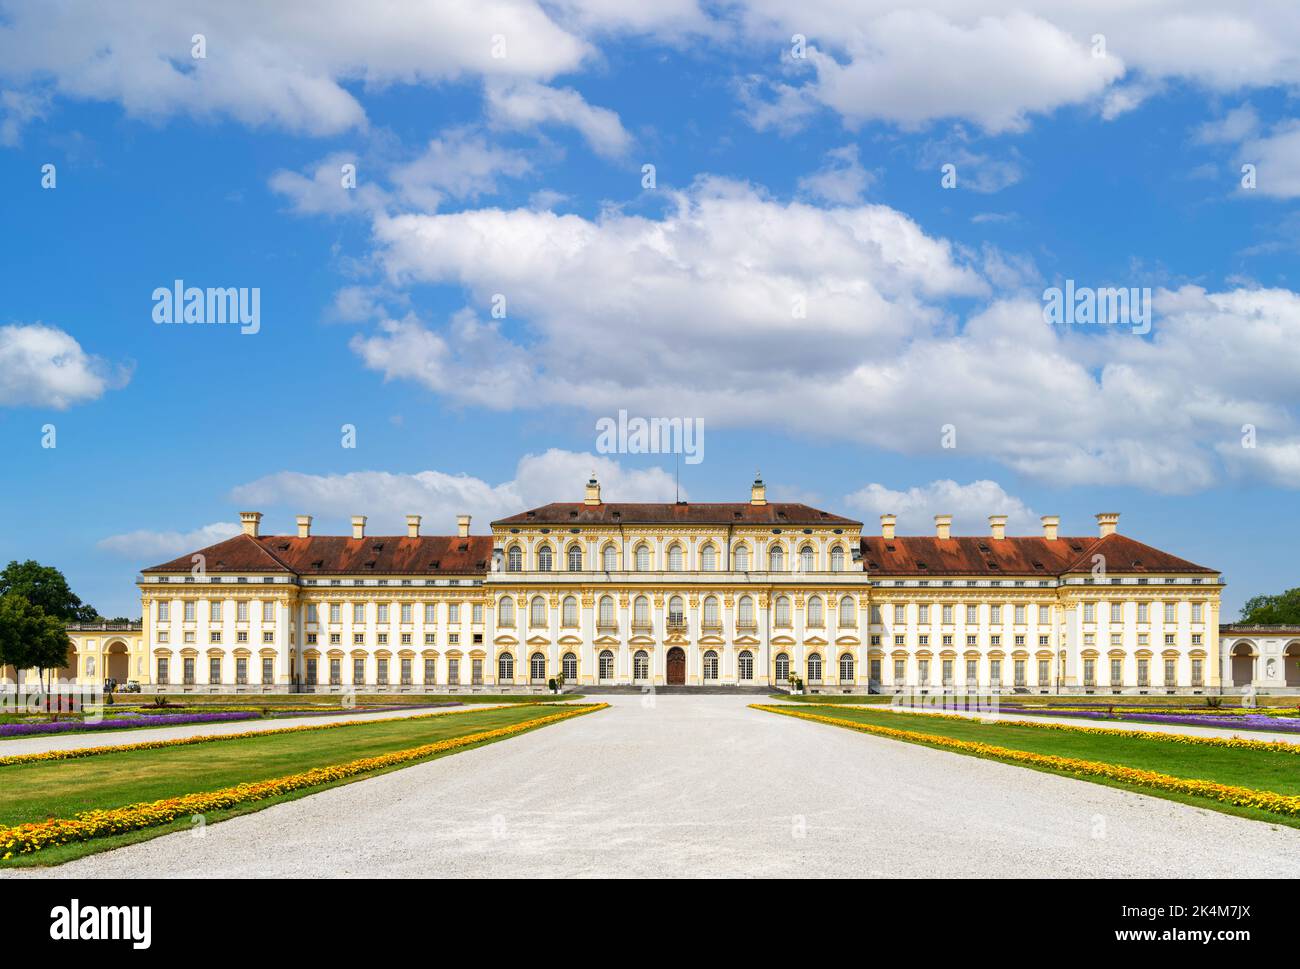 Neues Schloss Schleißheim, Schleissheim palace complex, Munich, Bavaria, Germany Stock Photo